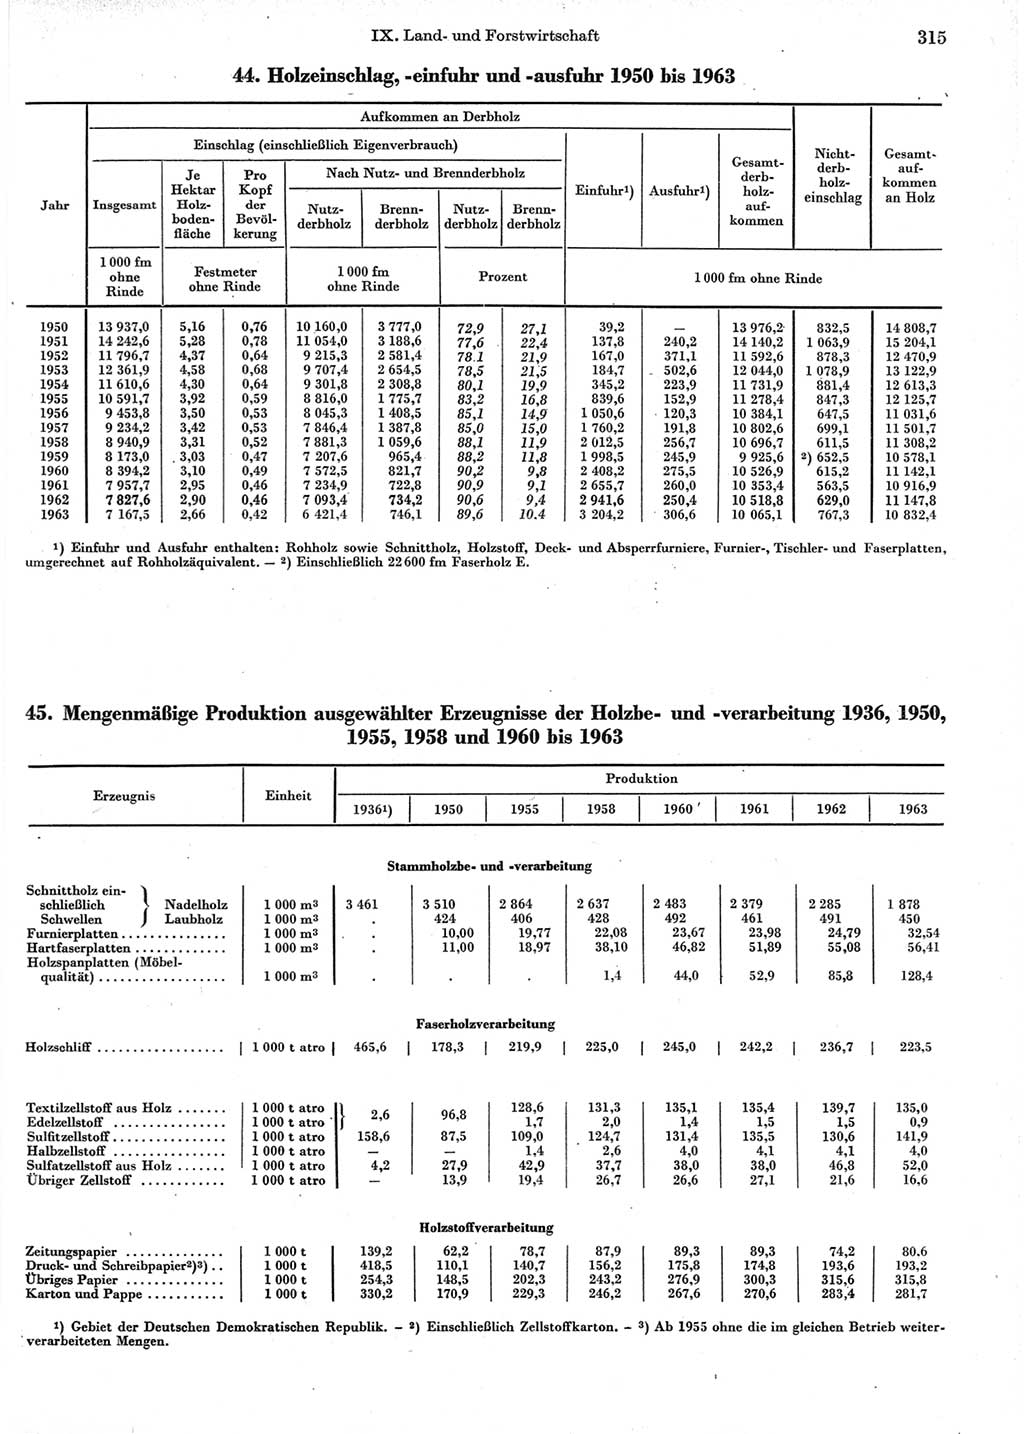 Statistisches Jahrbuch der Deutschen Demokratischen Republik (DDR) 1964, Seite 315 (Stat. Jb. DDR 1964, S. 315)